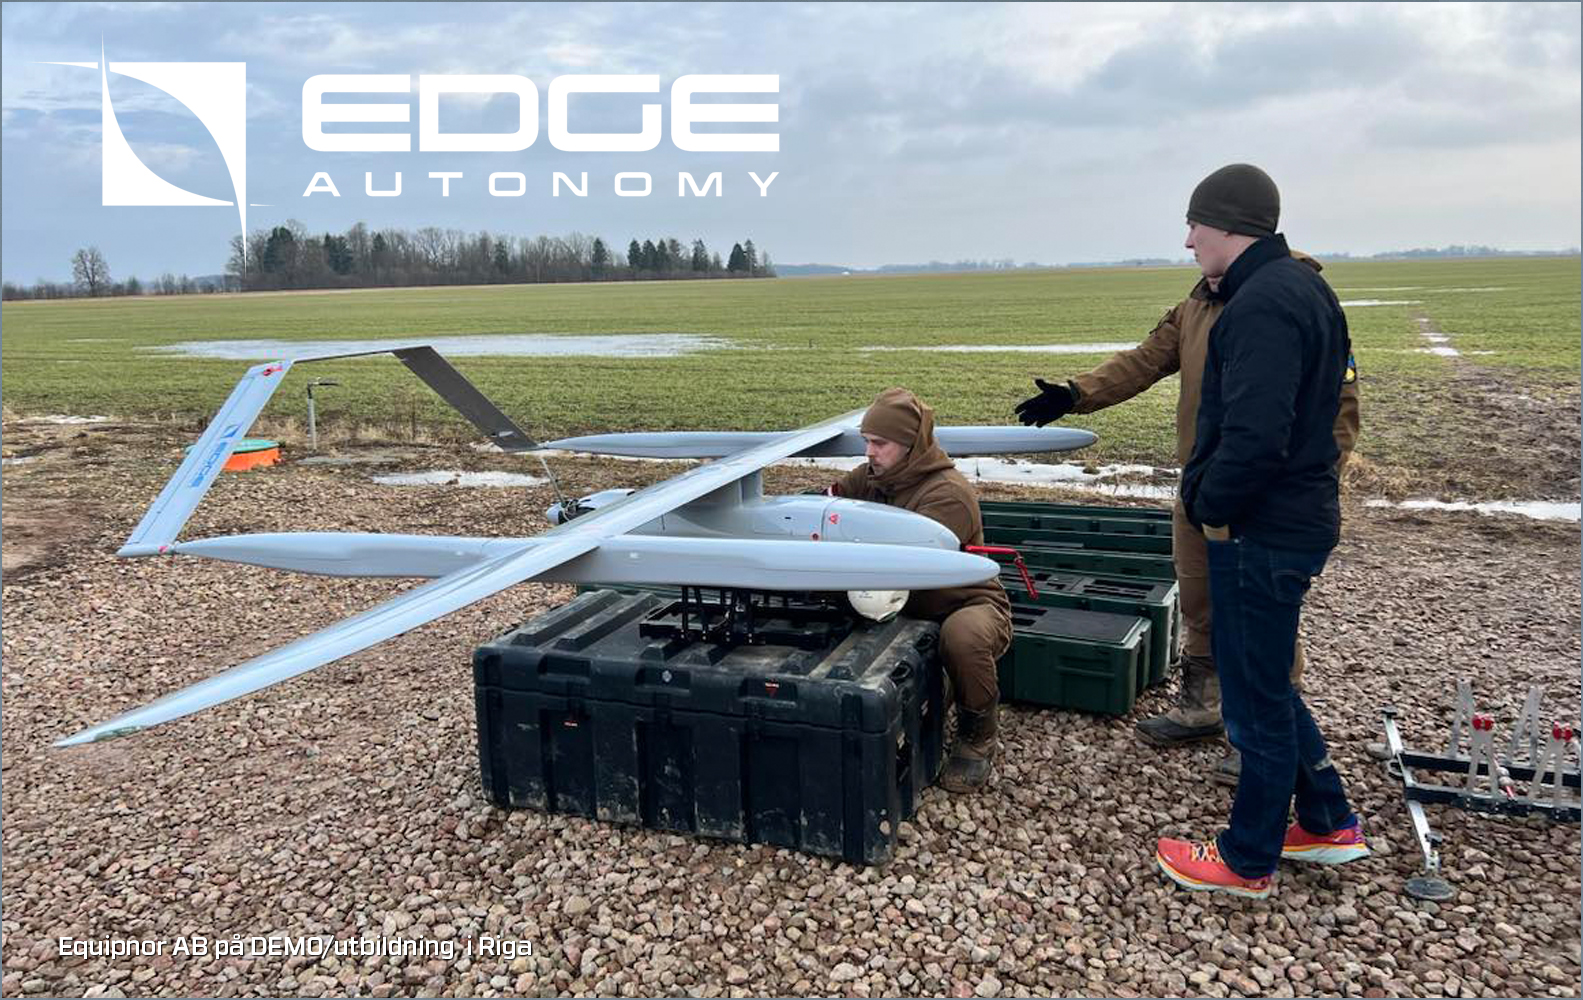 EDGE Autonomy